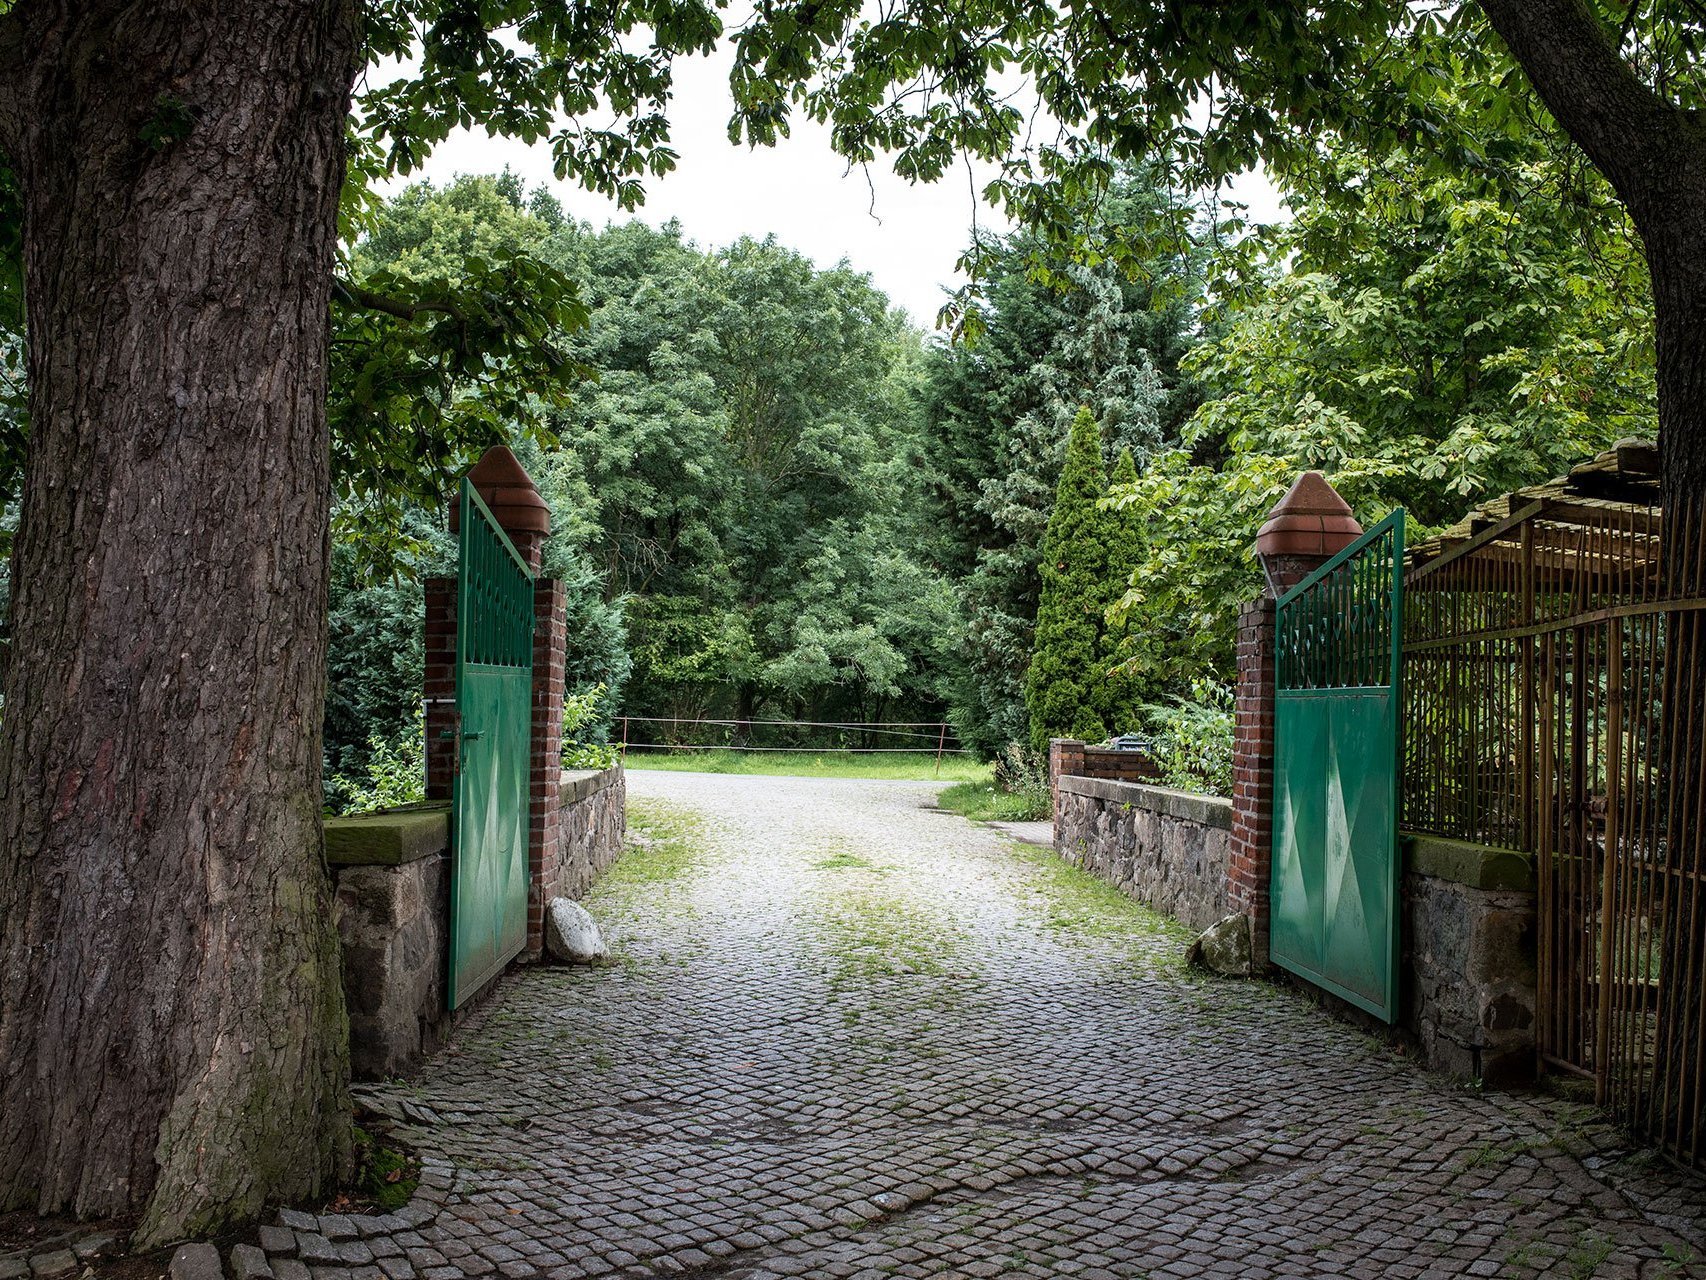 Unter Bäumen führt ein Kiesweg durch ein grünes Tor. Im Hintergrund Bäume